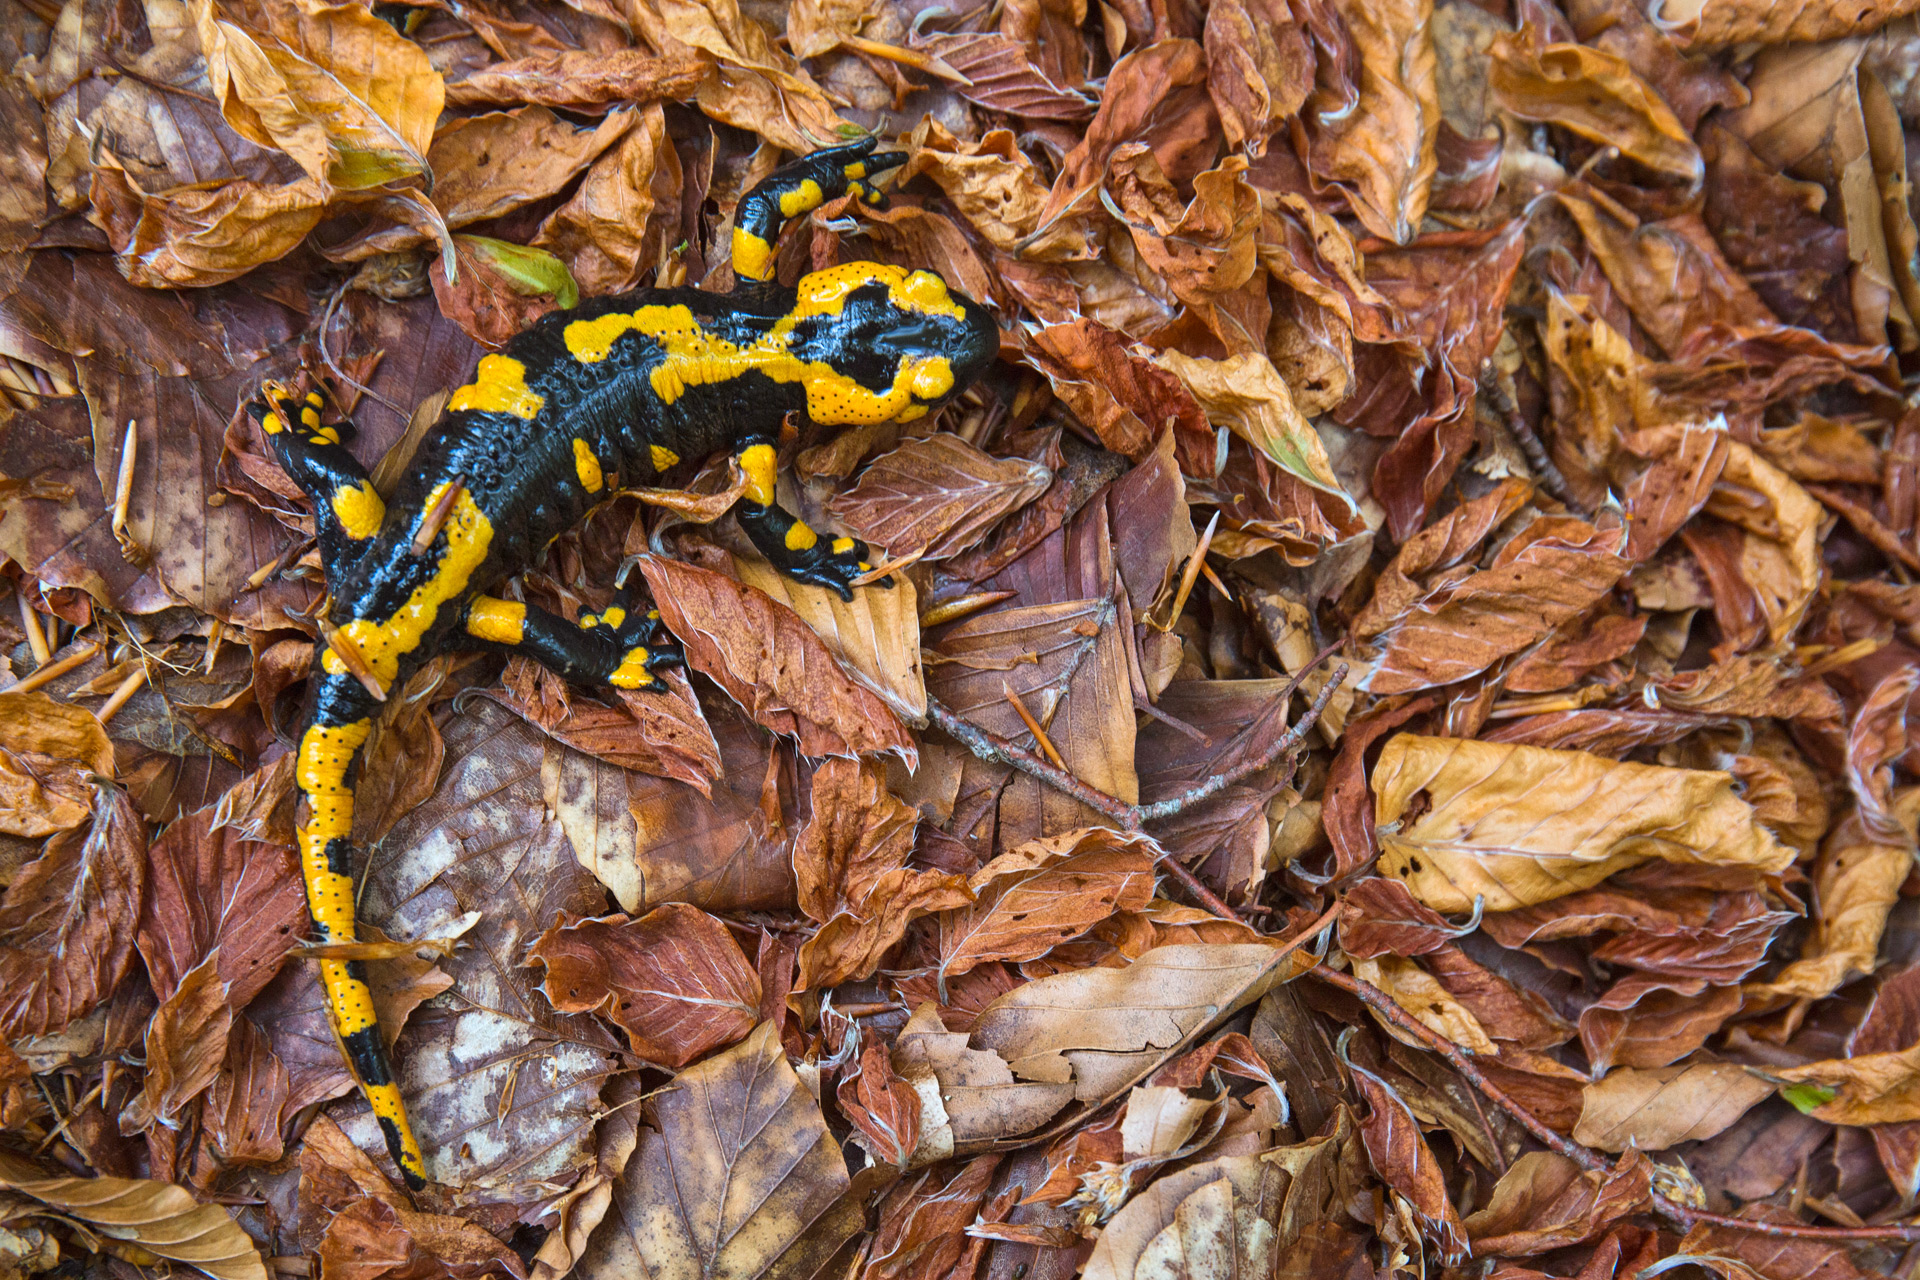 La salamandra pezzata appenninica, nella foto, vive in alcune faggete vetuste caratterizzate dalla presenza costante di acqua